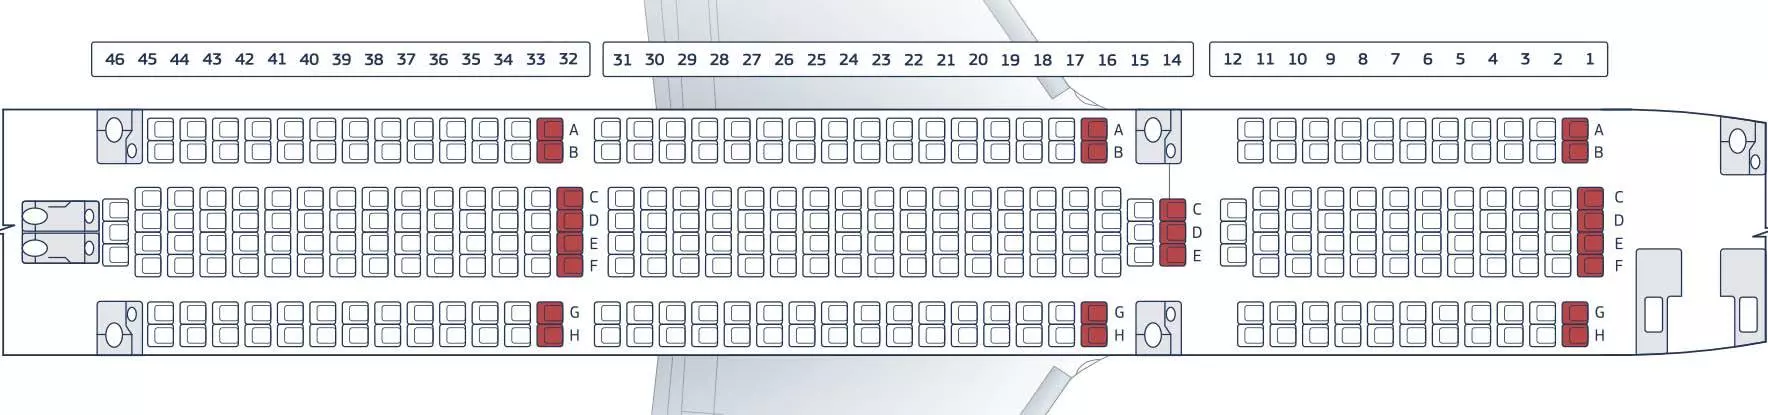 Схема салона и лучшие места в boeing 767-300 авиакомпании azur air